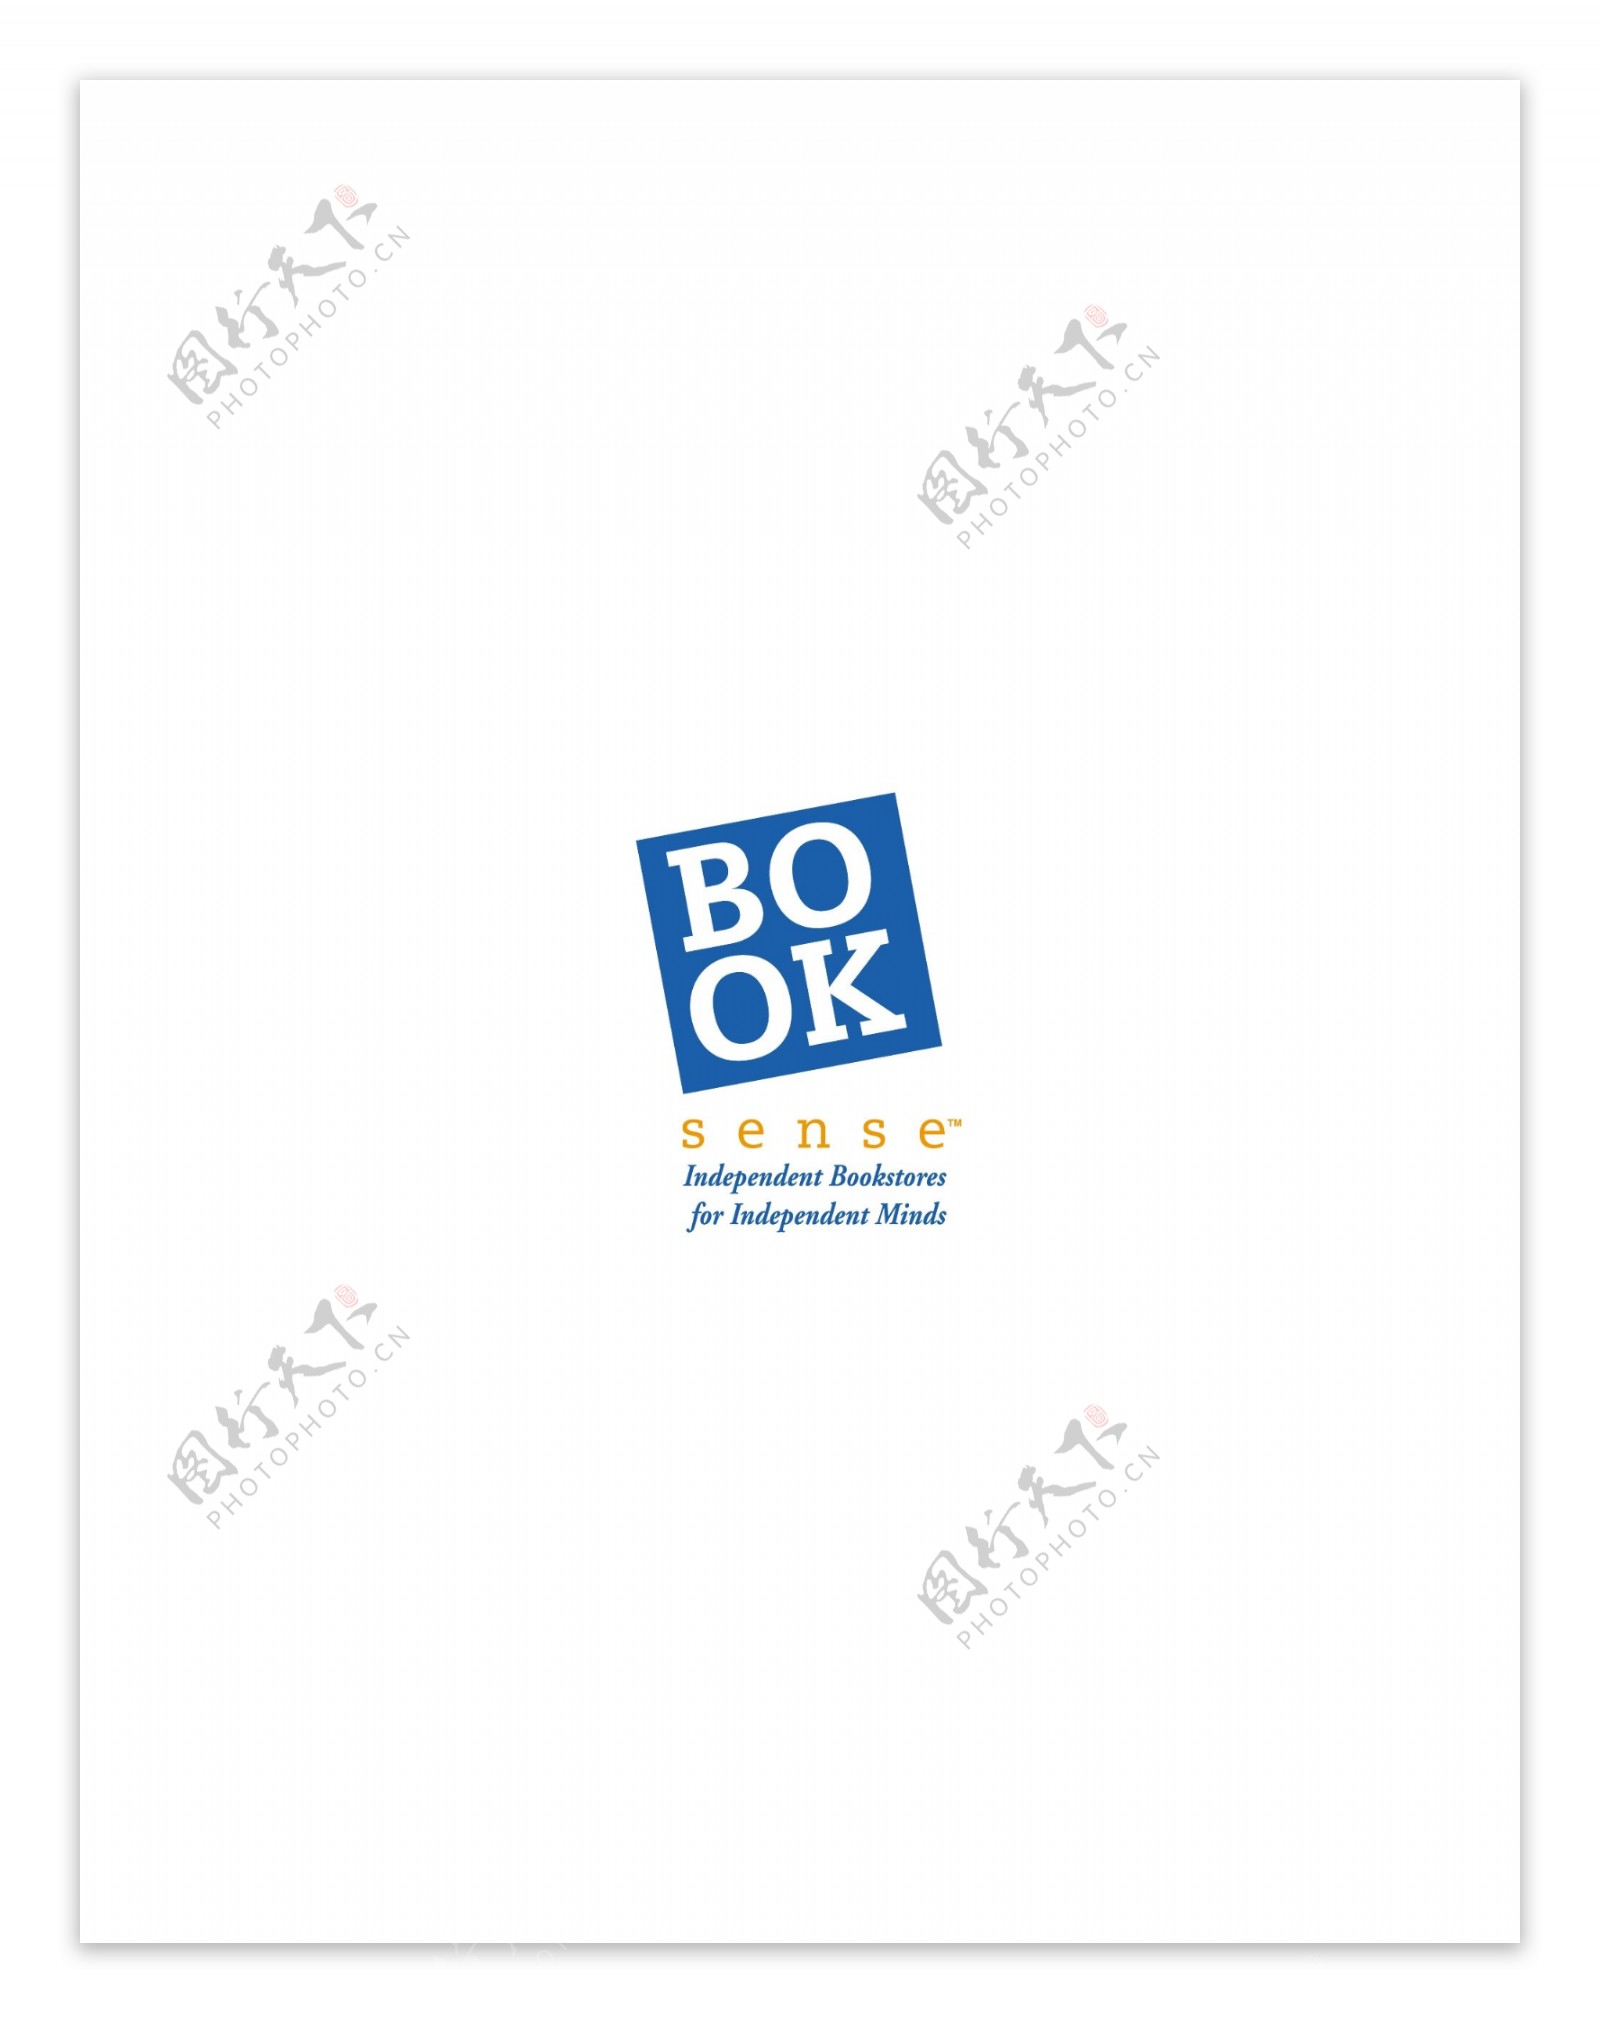 BookSenselogo设计欣赏软件和硬件公司标志BookSense下载标志设计欣赏